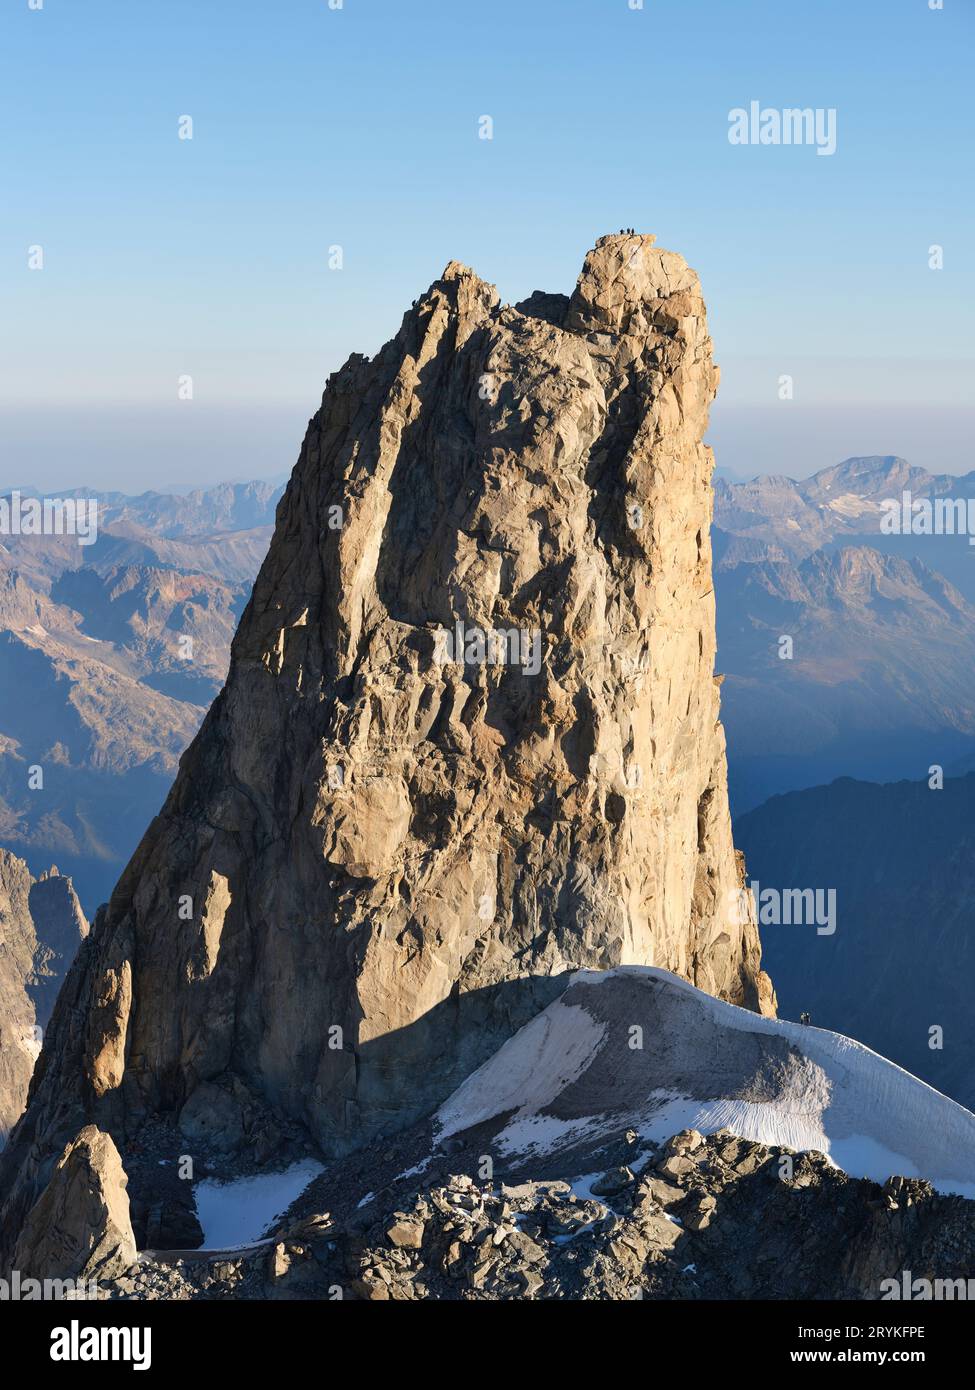 VUE AÉRIENNE. Dent du géant (4013m) vue de l'est. 3 grimpeurs sur le dessus donnent un sens de l'échelle à ce pic de granit incroyable. Chamonix, France. Banque D'Images